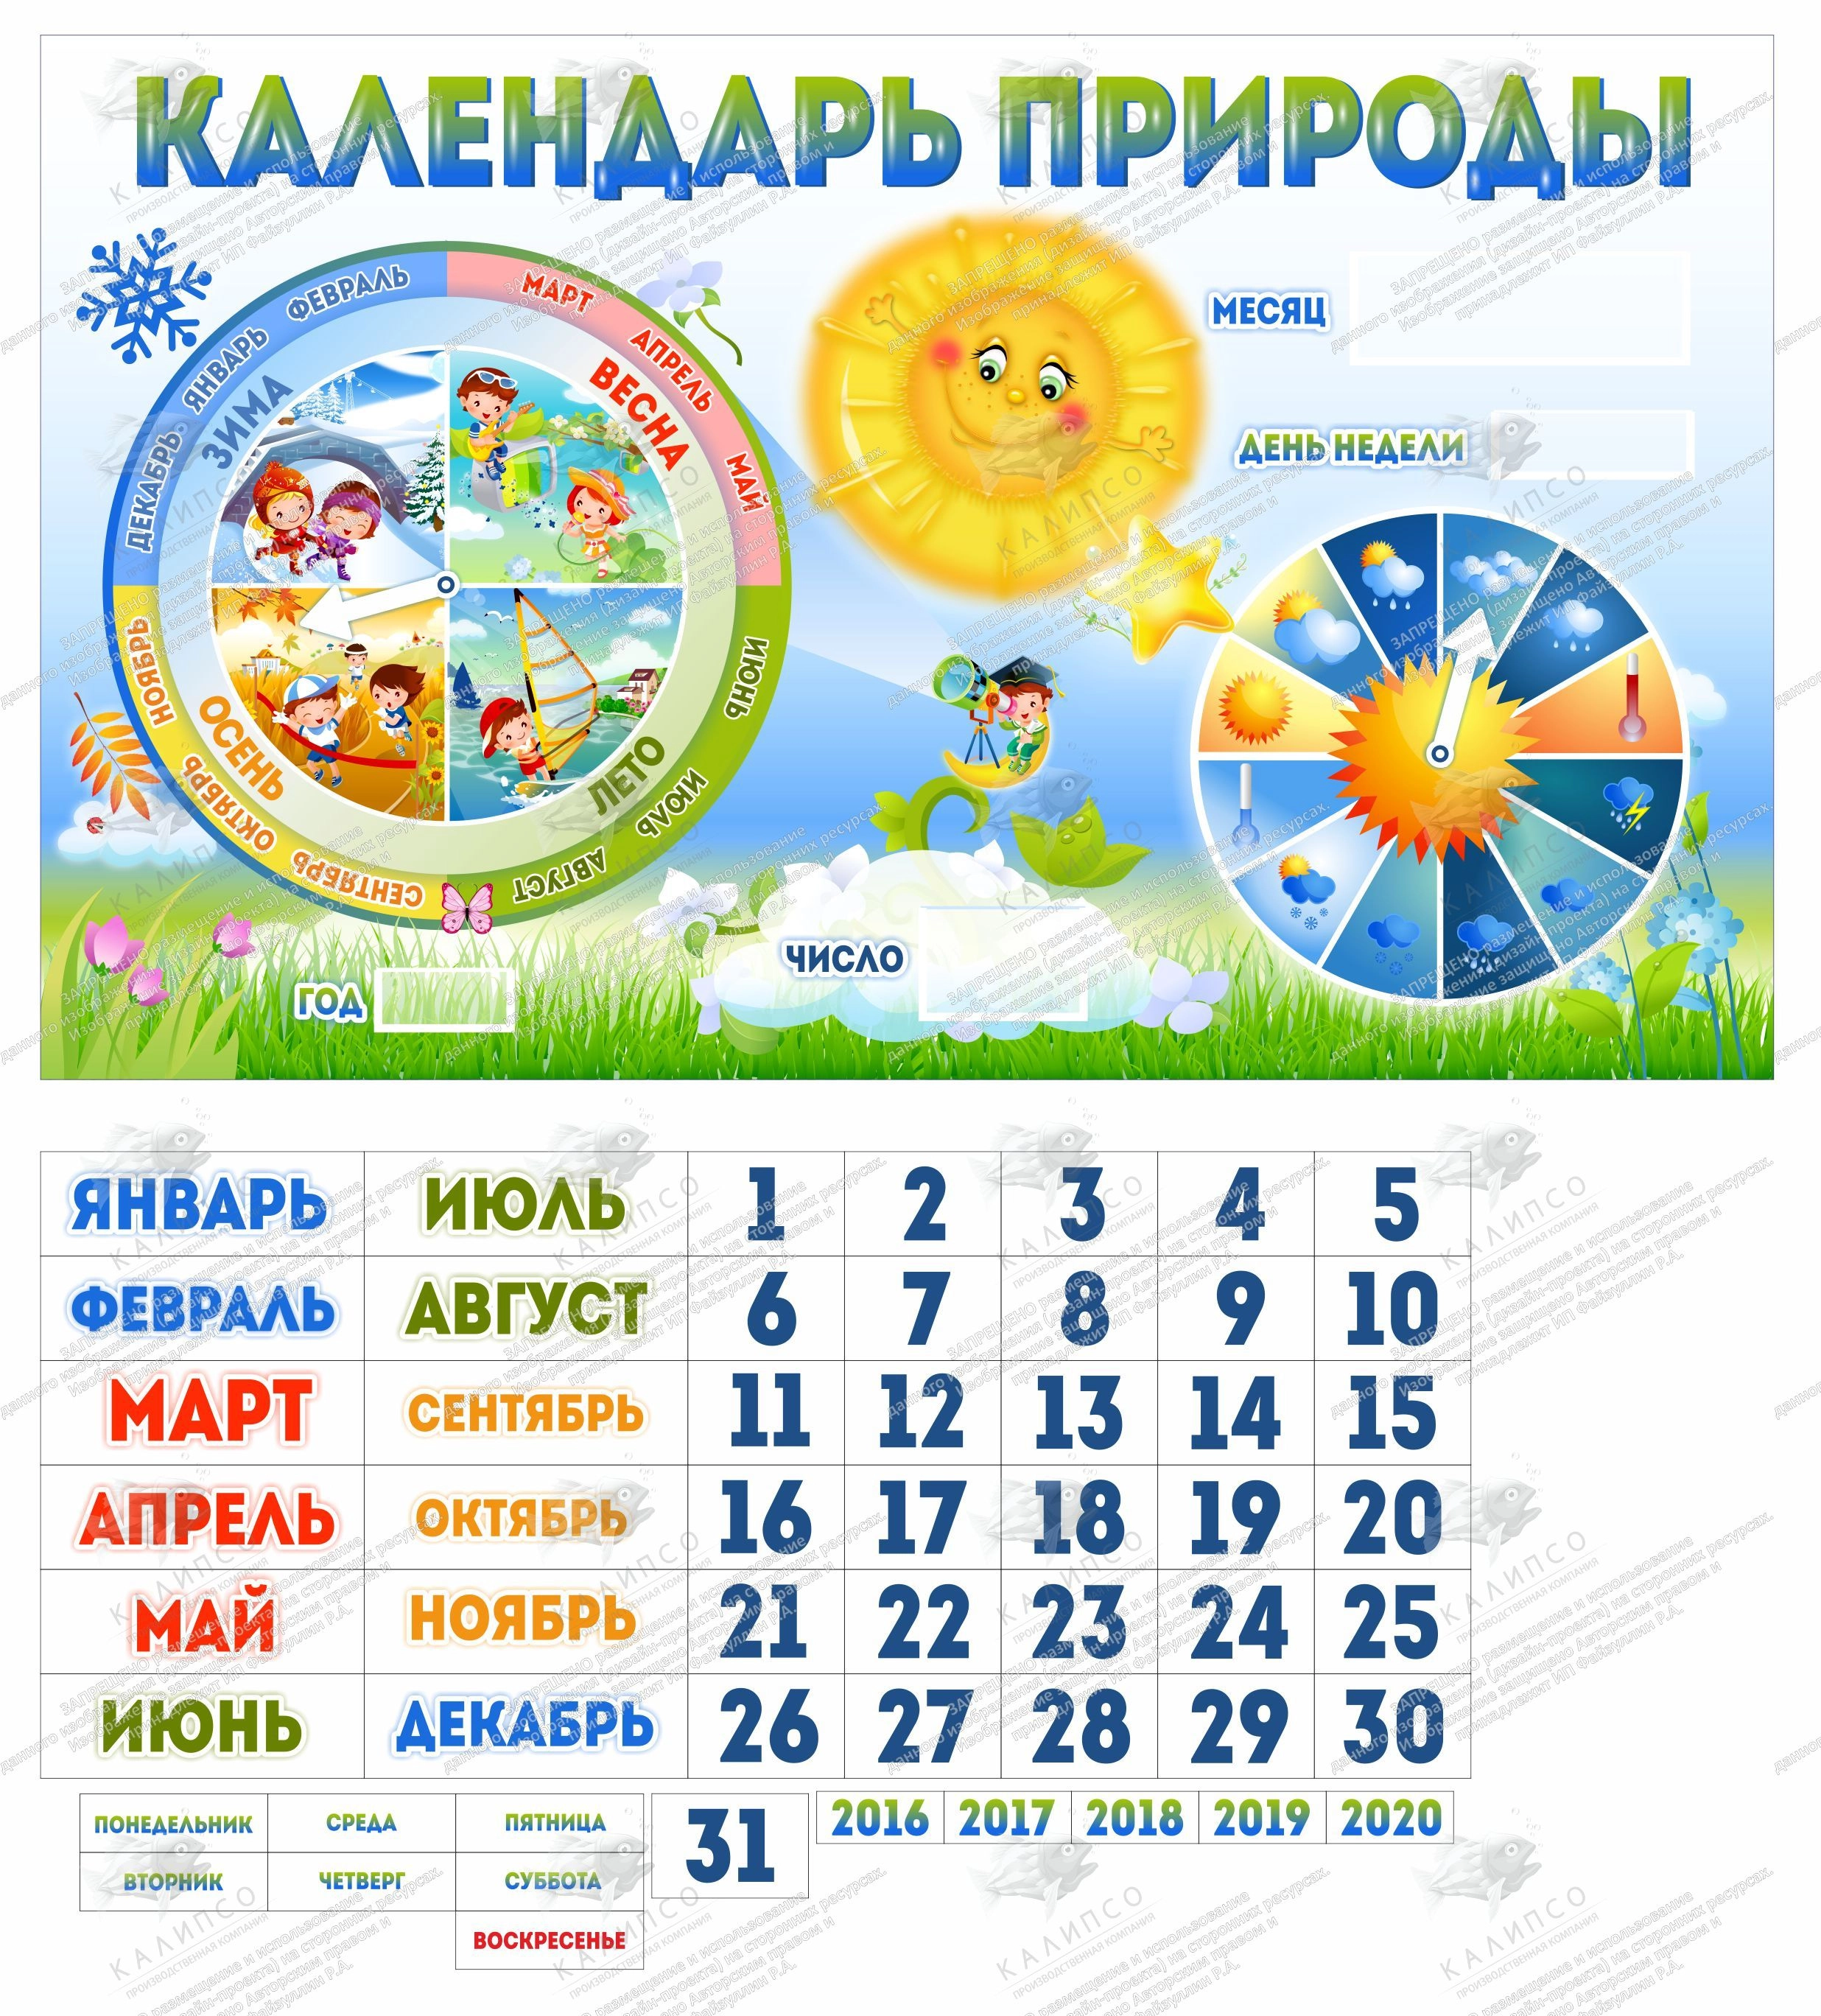 Дни недели для детского сада. Календарь природы. Календарь природы для детского. Календарь природы для детского сада. Календарь для детского садада.